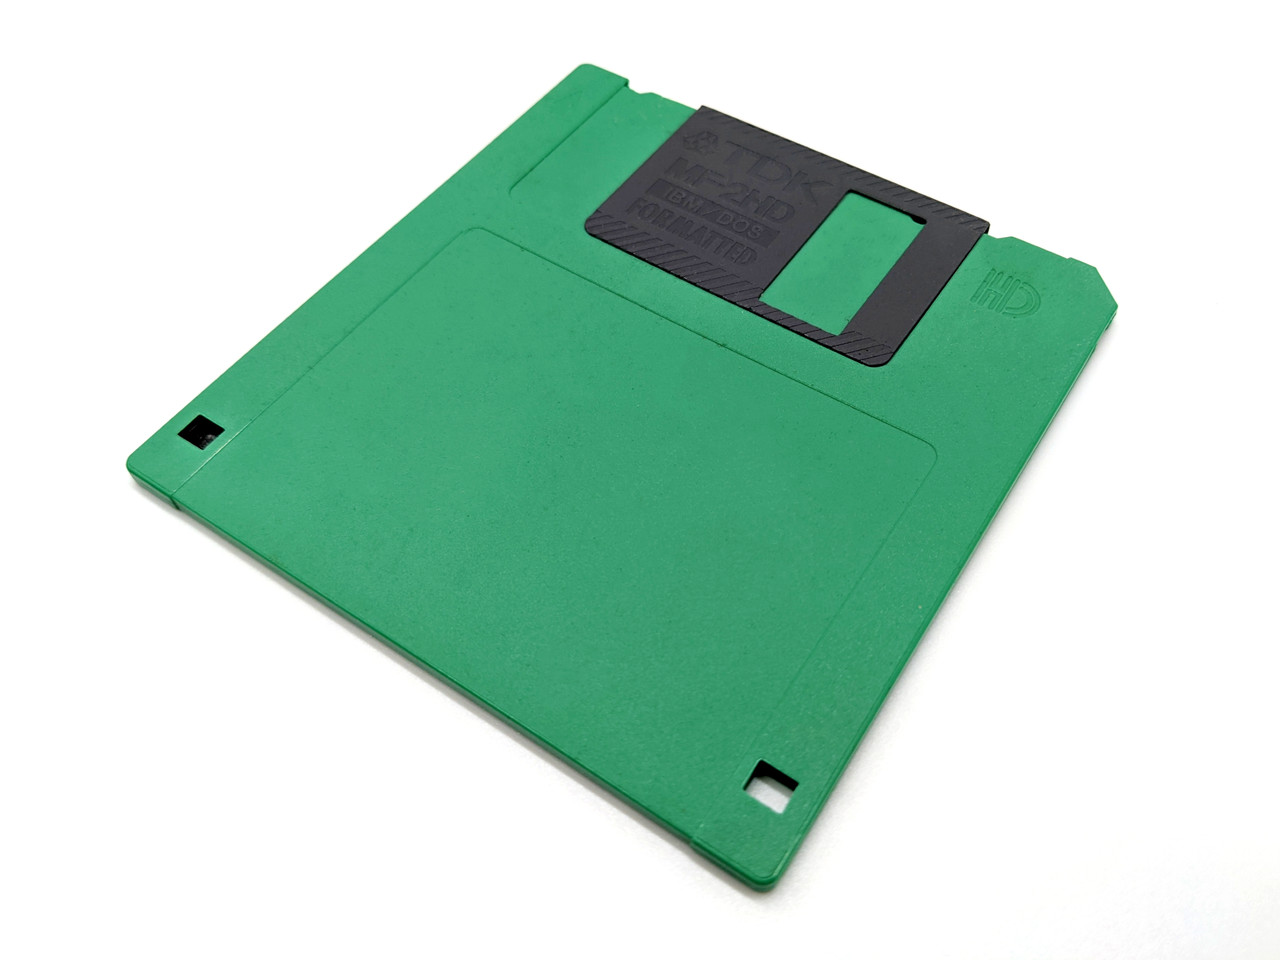 MPC 2000 XL 1.20 OS on Floppy Disk